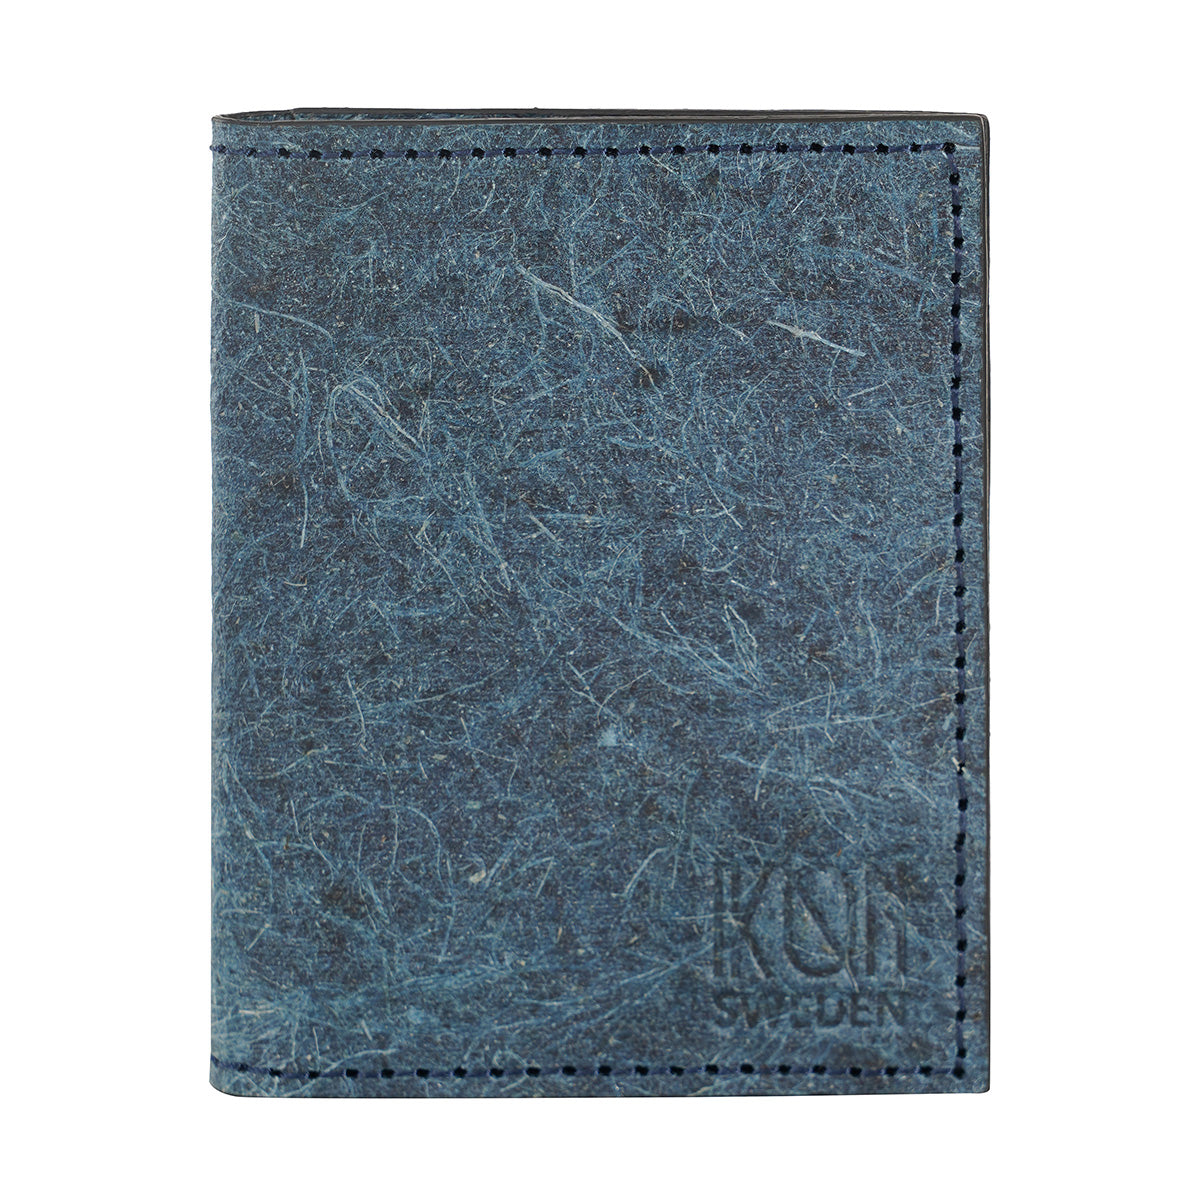 Coconut Leather BiFold Card Wallet - Dark Indigo